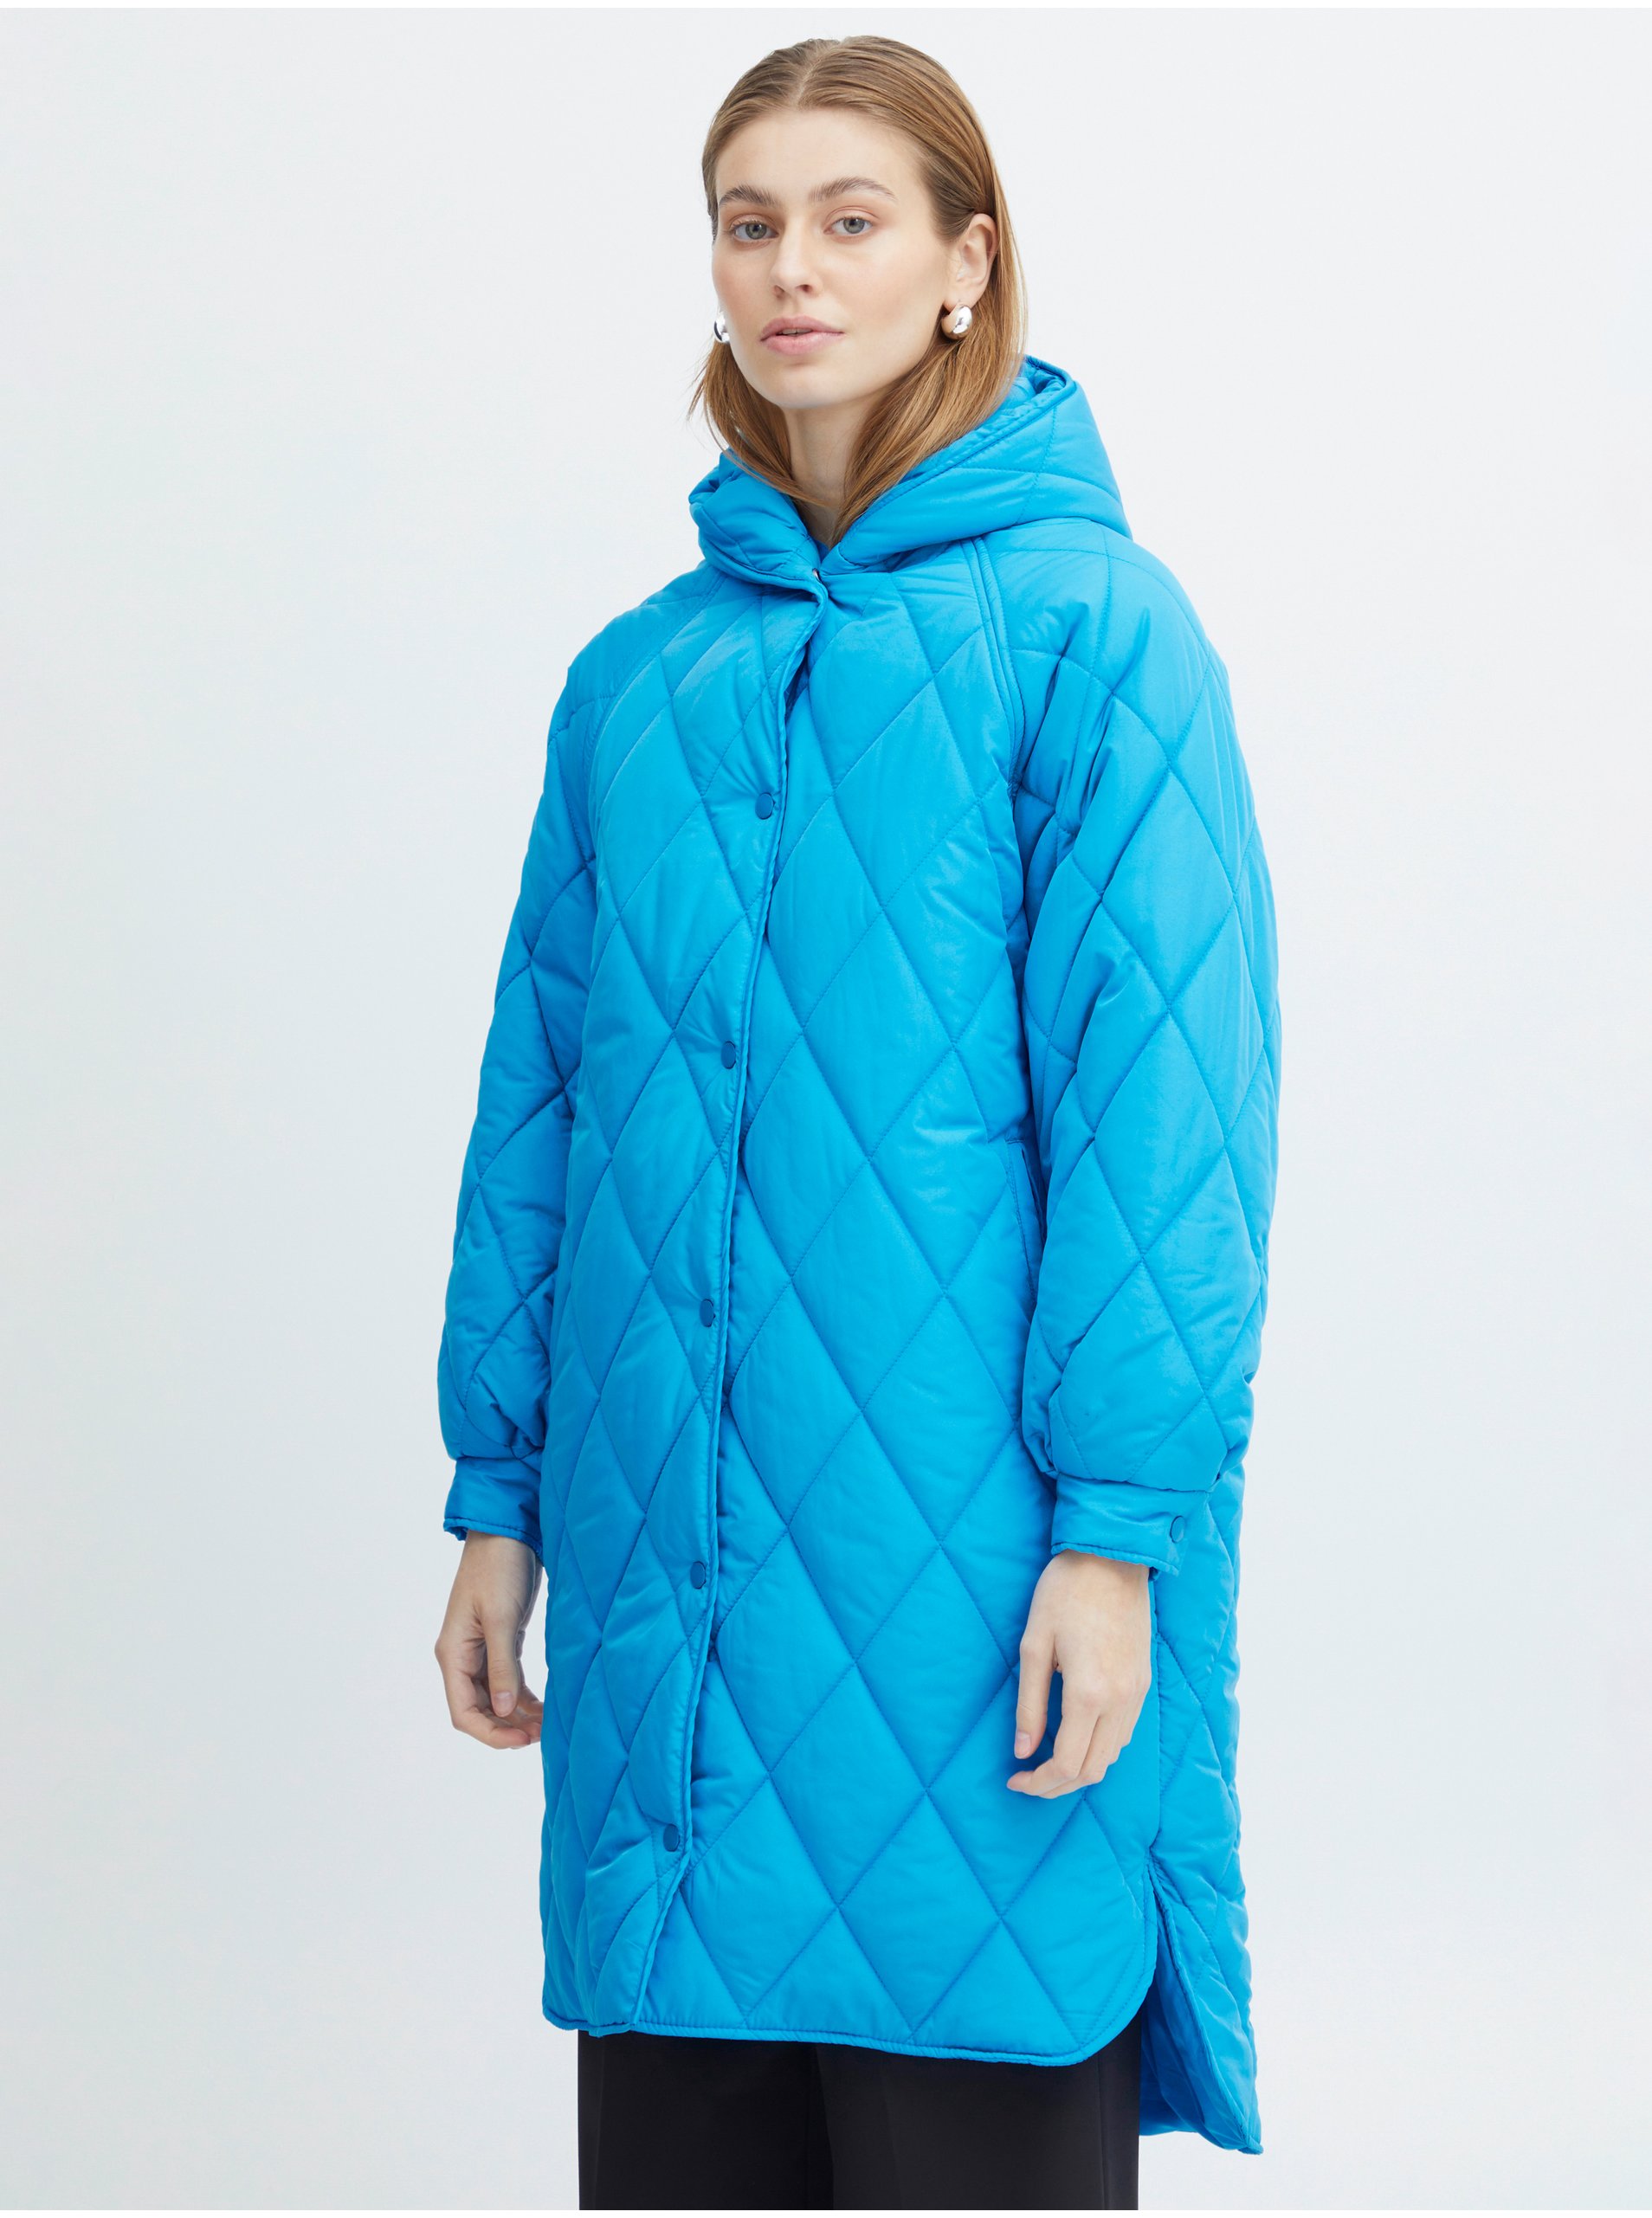 E-shop Modrý dámský prošívaný zimní kabát s kapucí ICHI